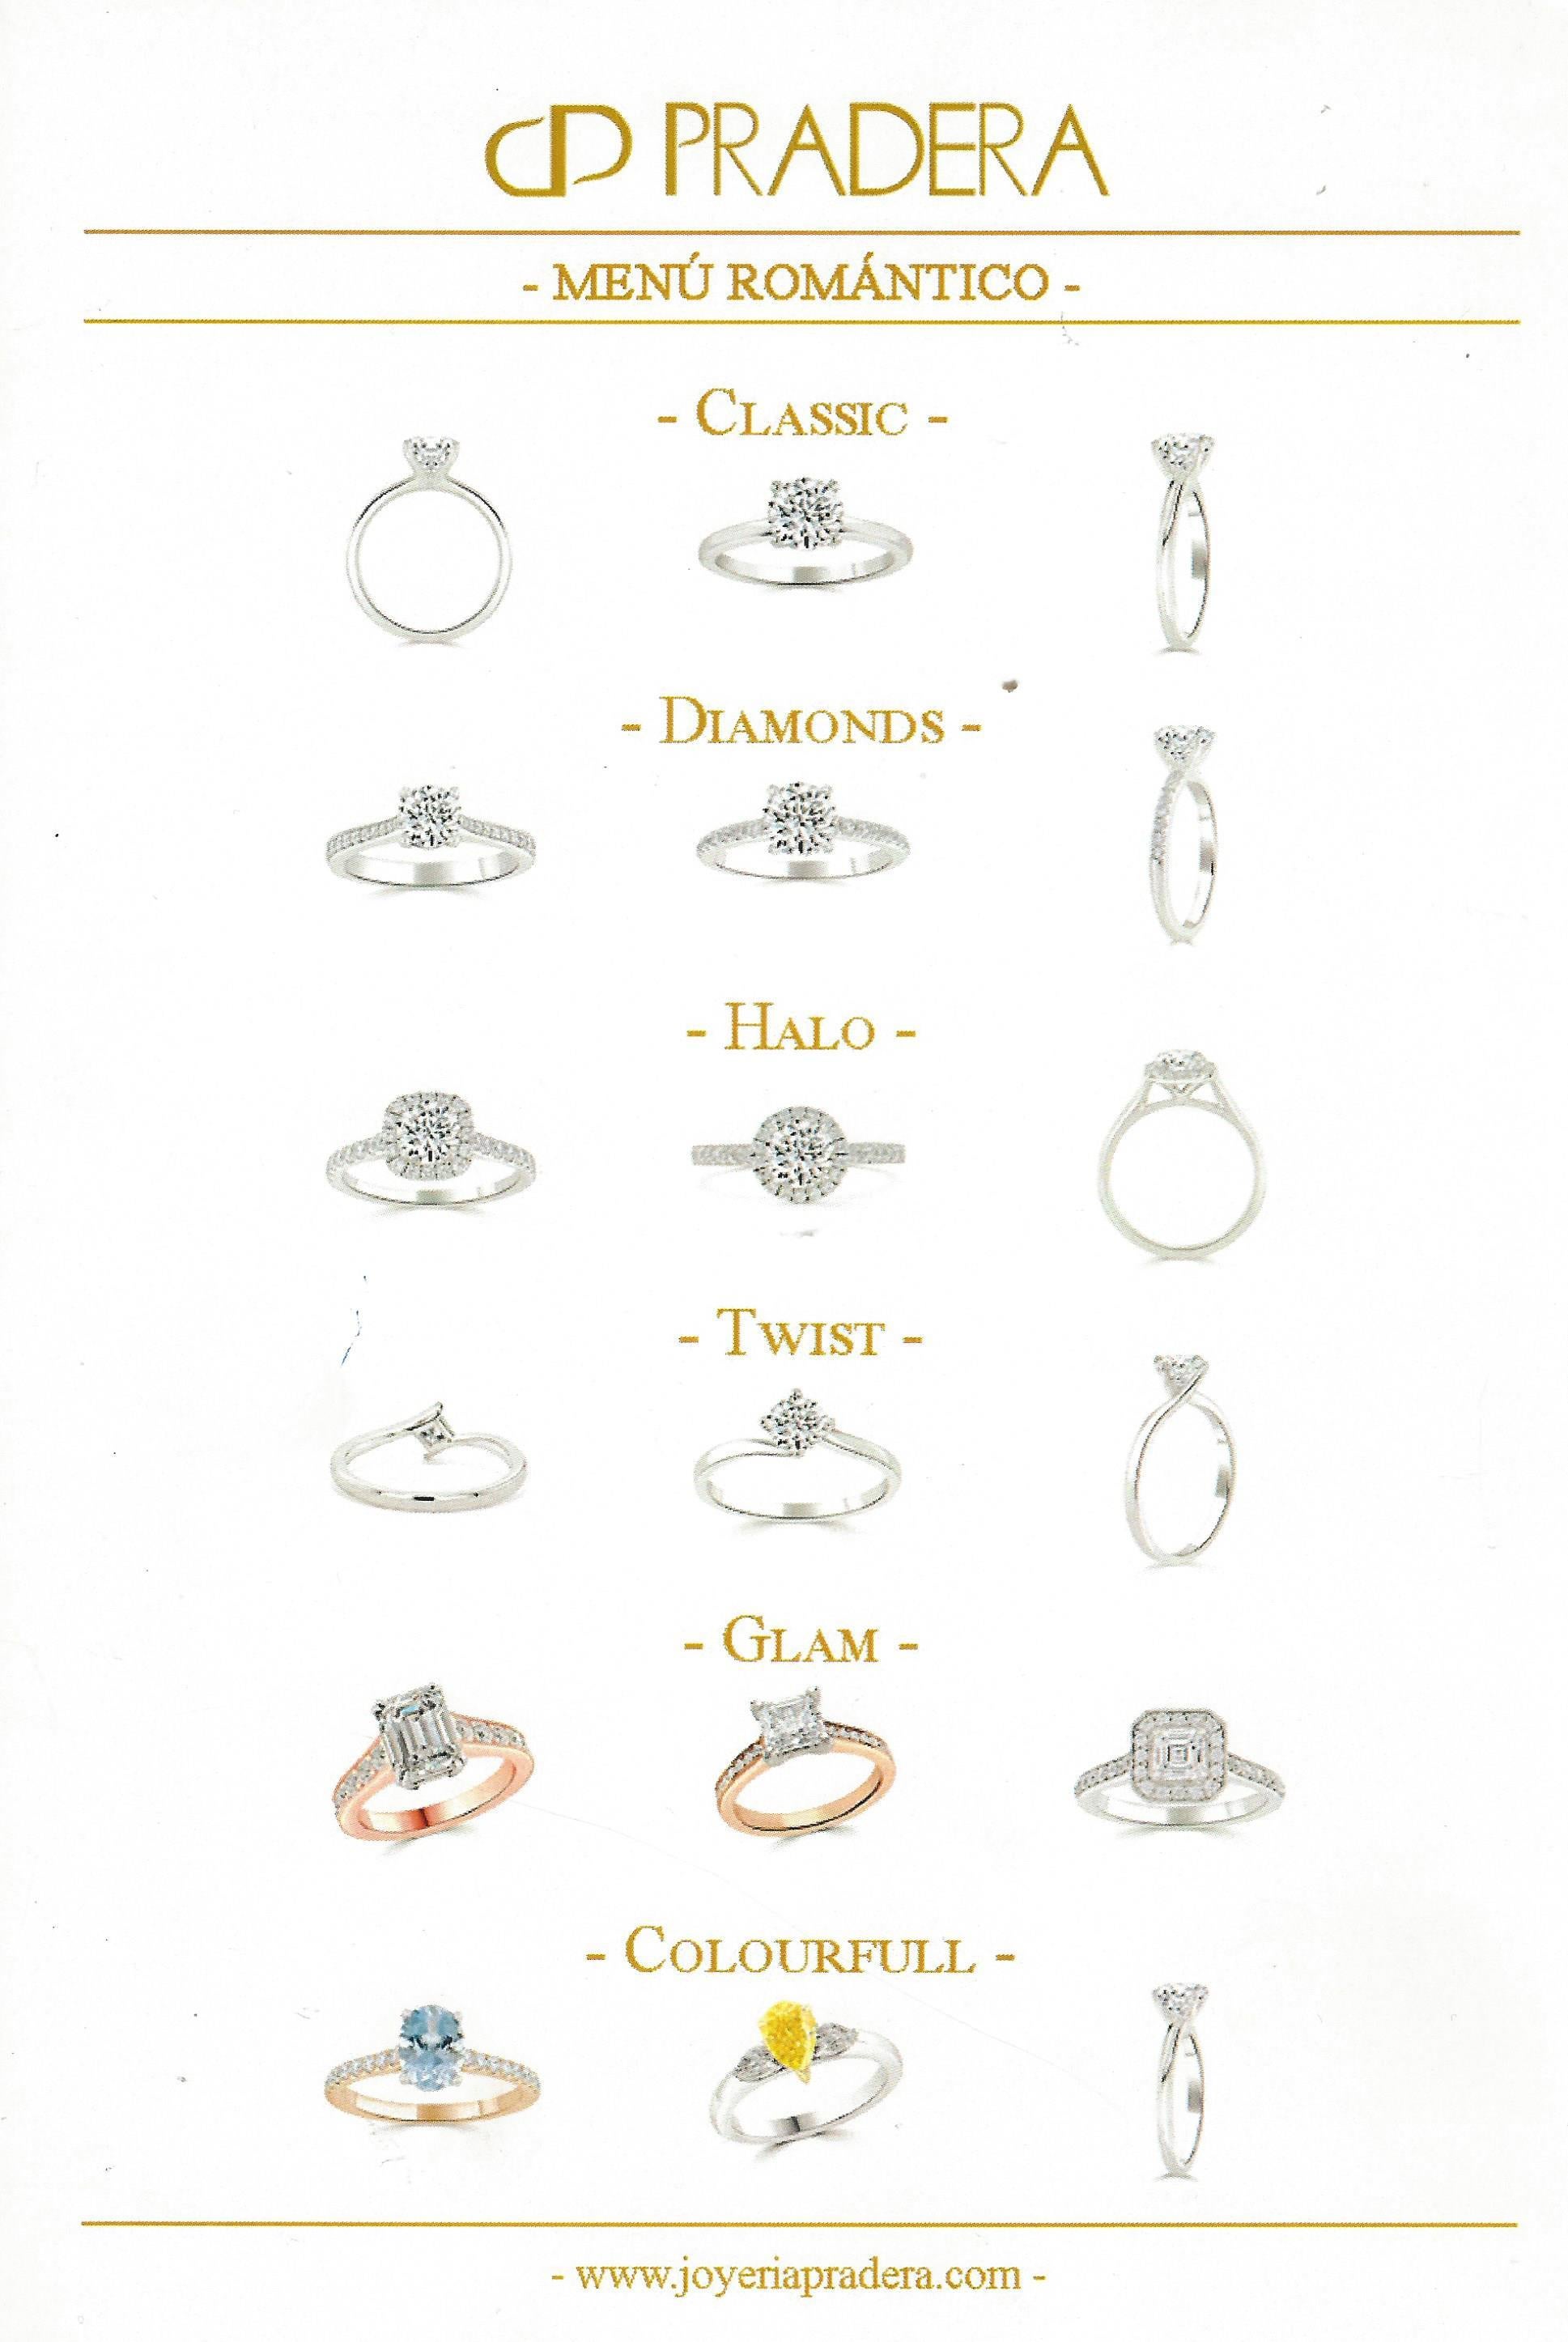 En vente :  Bague de fiançailles Pradera Magic en or blanc 18 carats avec diamants 5